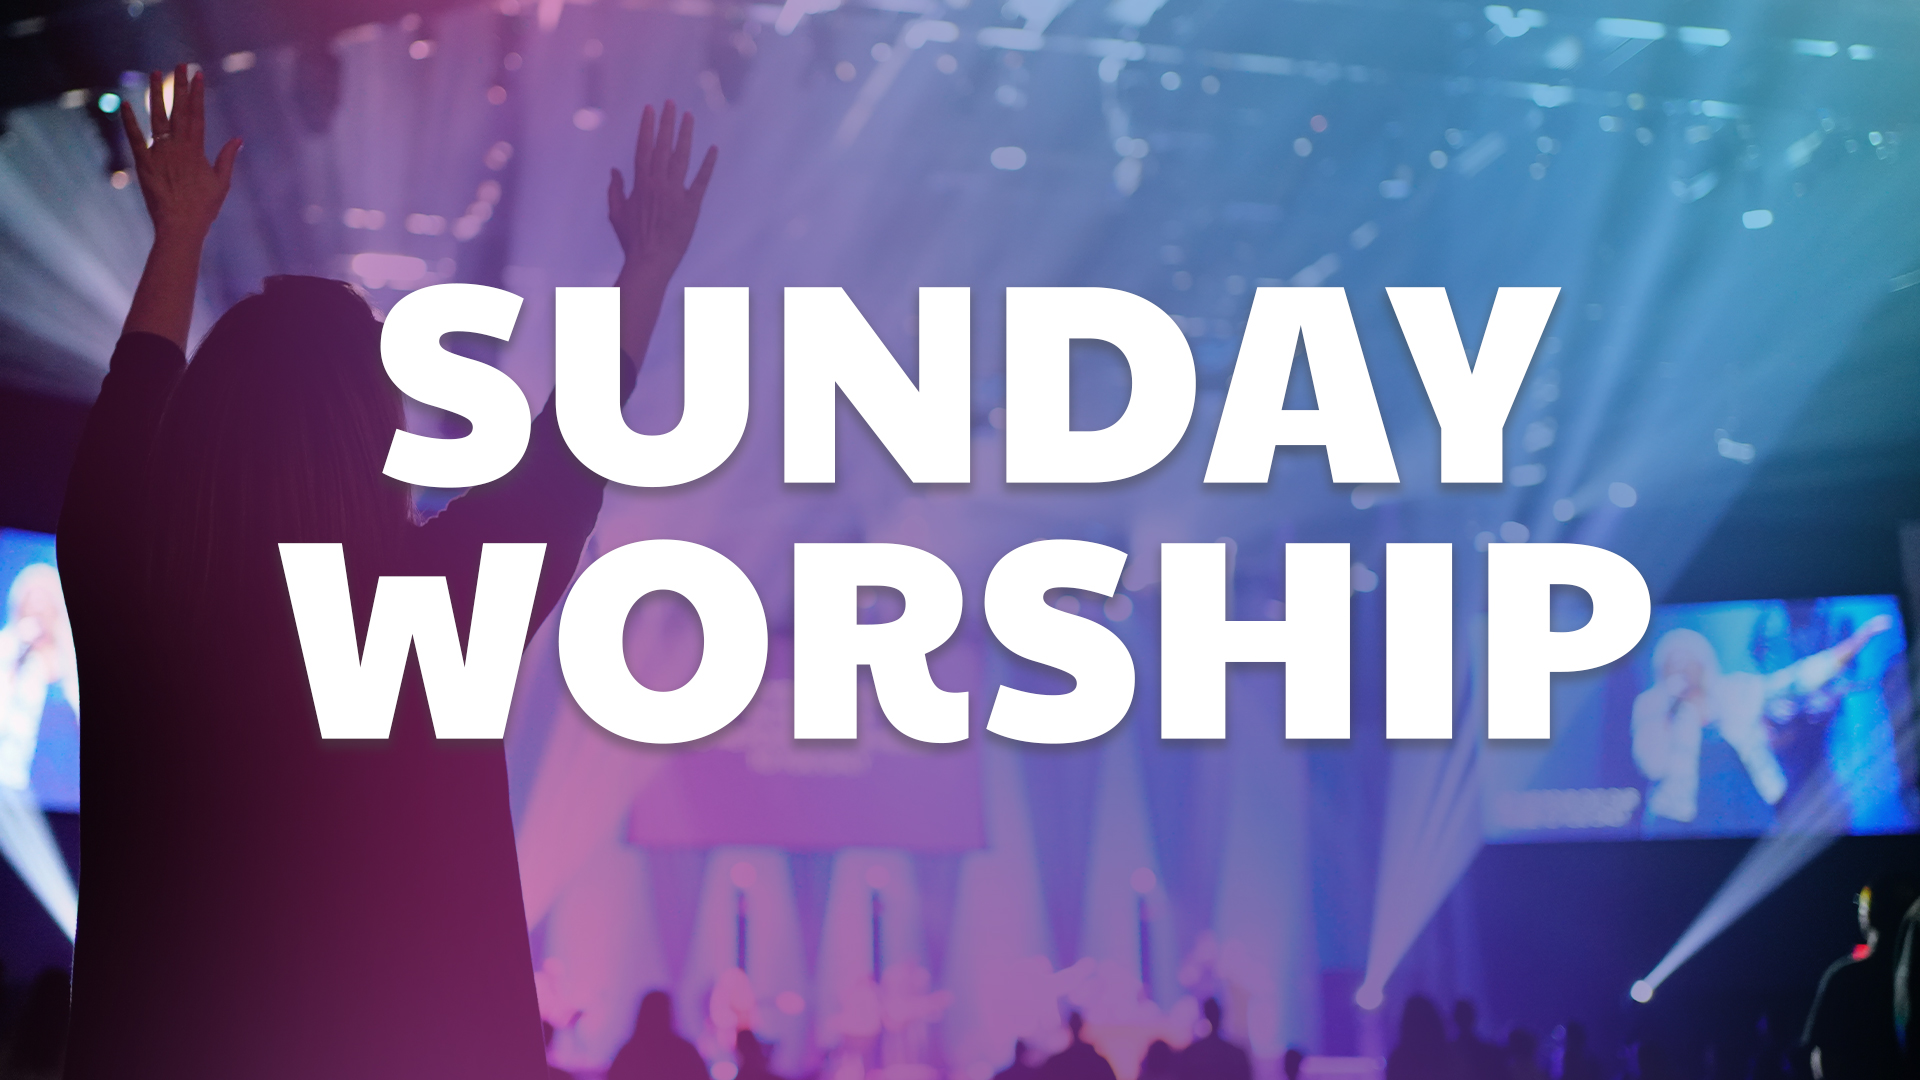 why worship on sunday